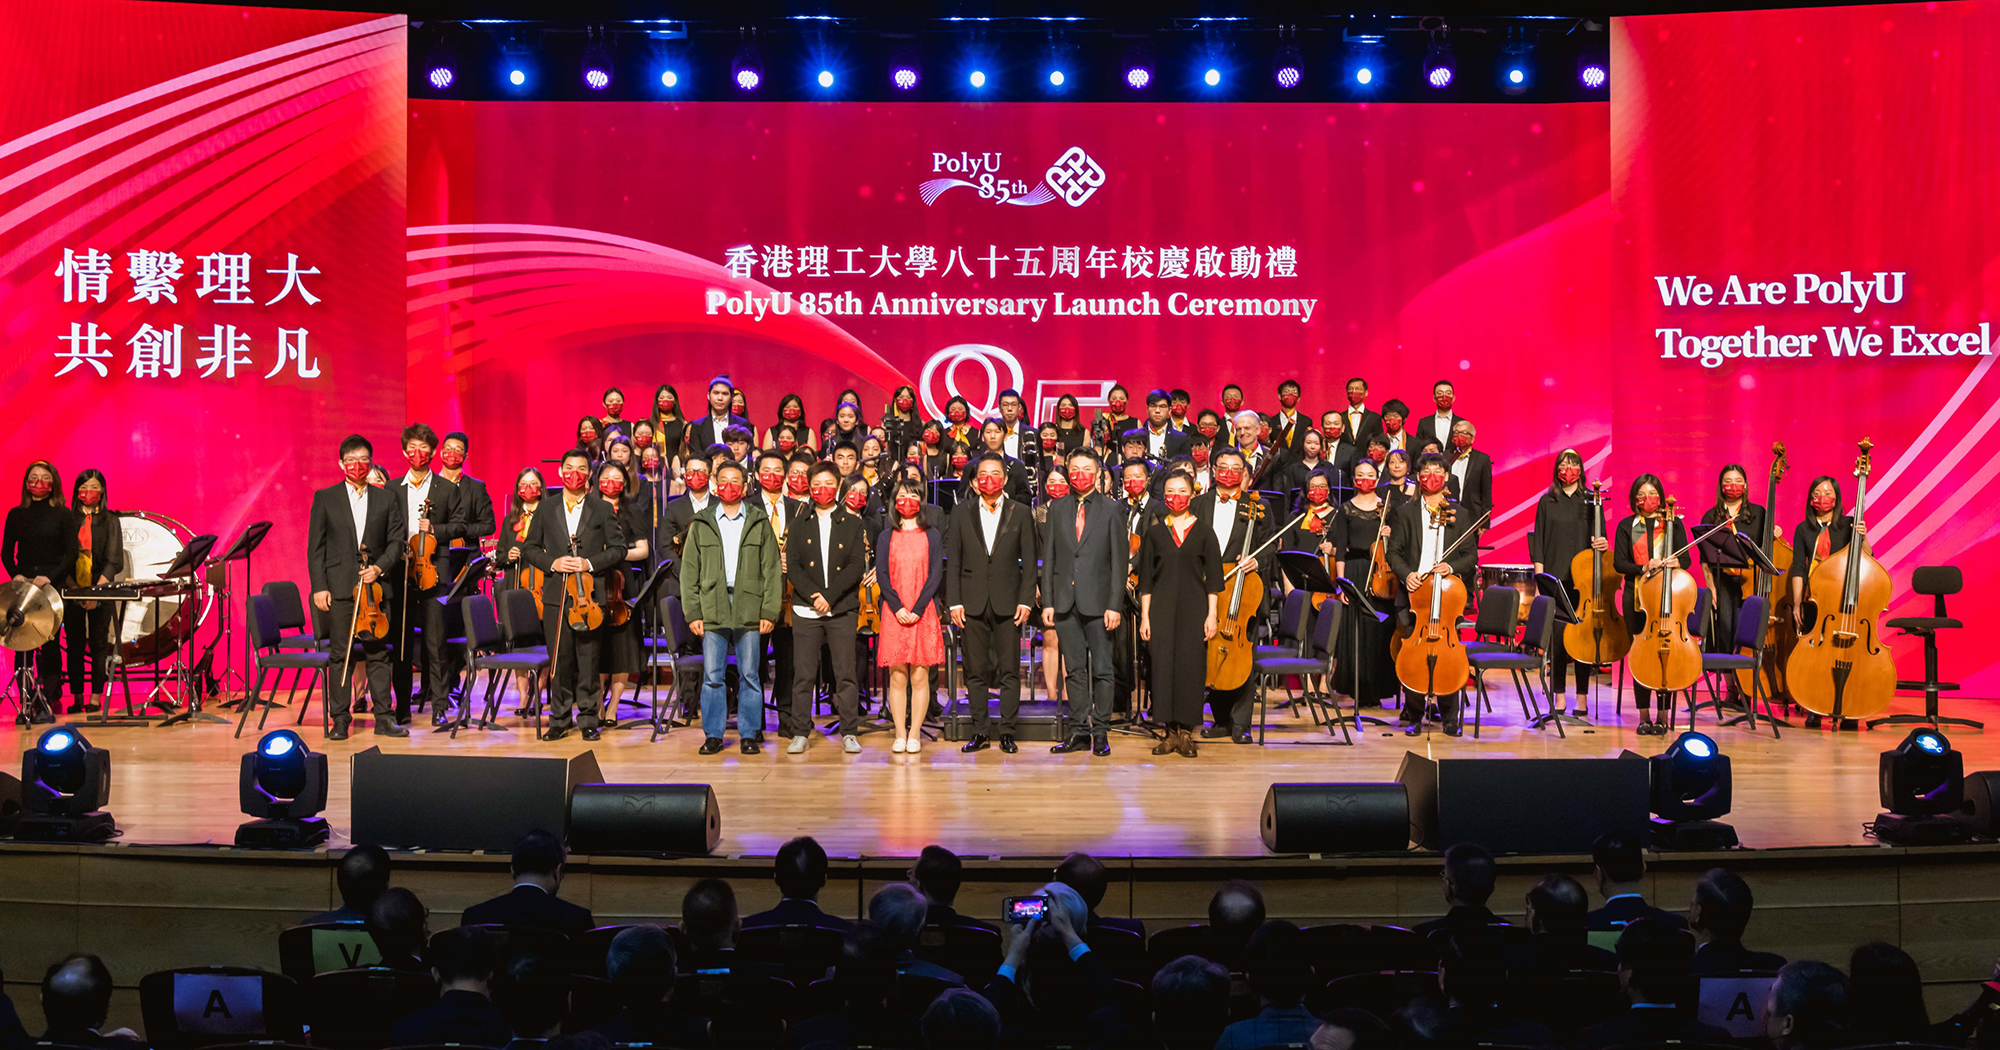 理大管弦乐团及理大合唱团在大学赛马会综艺馆联合演出八十五周年校庆主题曲。